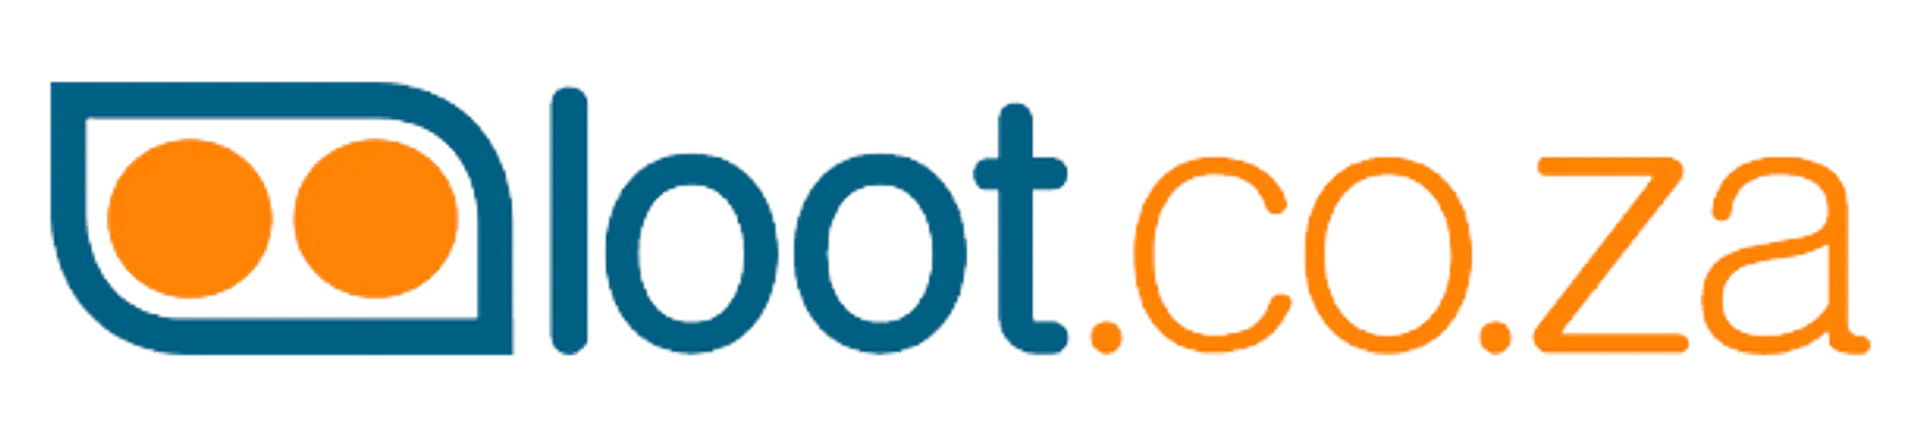 LOOT logo. Current catalogue